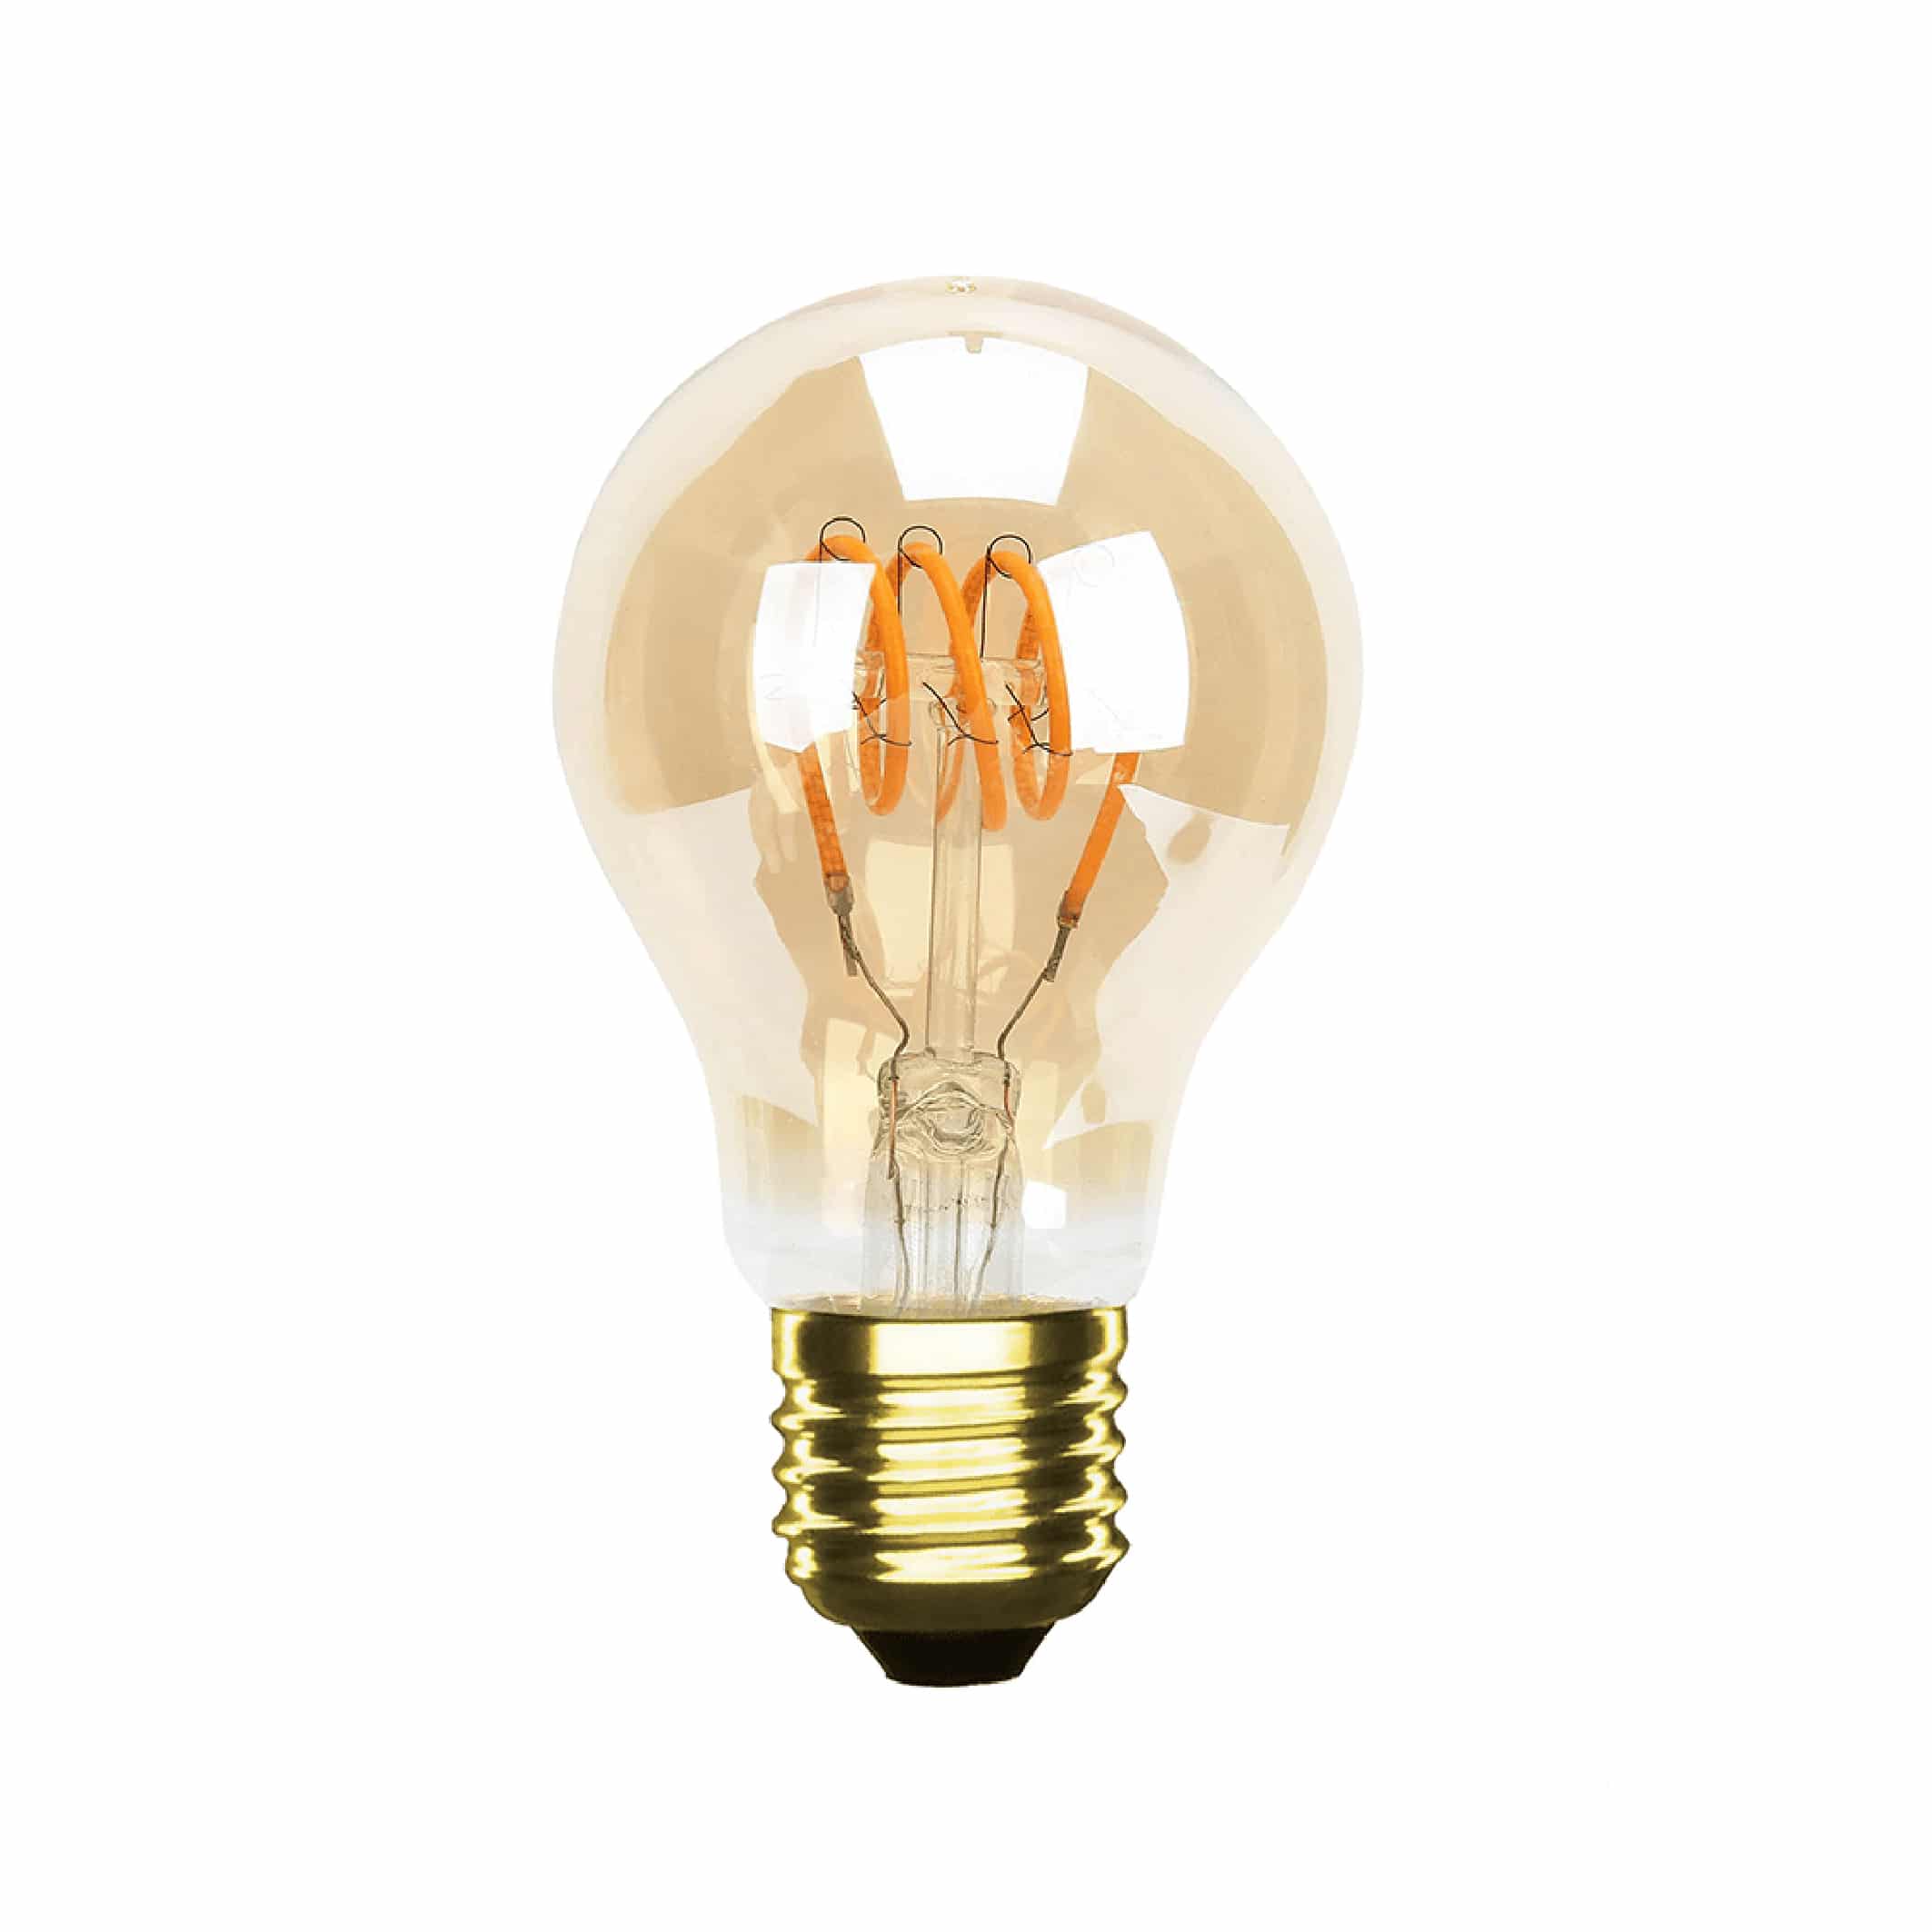 Agressief Schuldenaar Duizeligheid E27 LED lamp peer amber | Dimbaar - WilroLighting